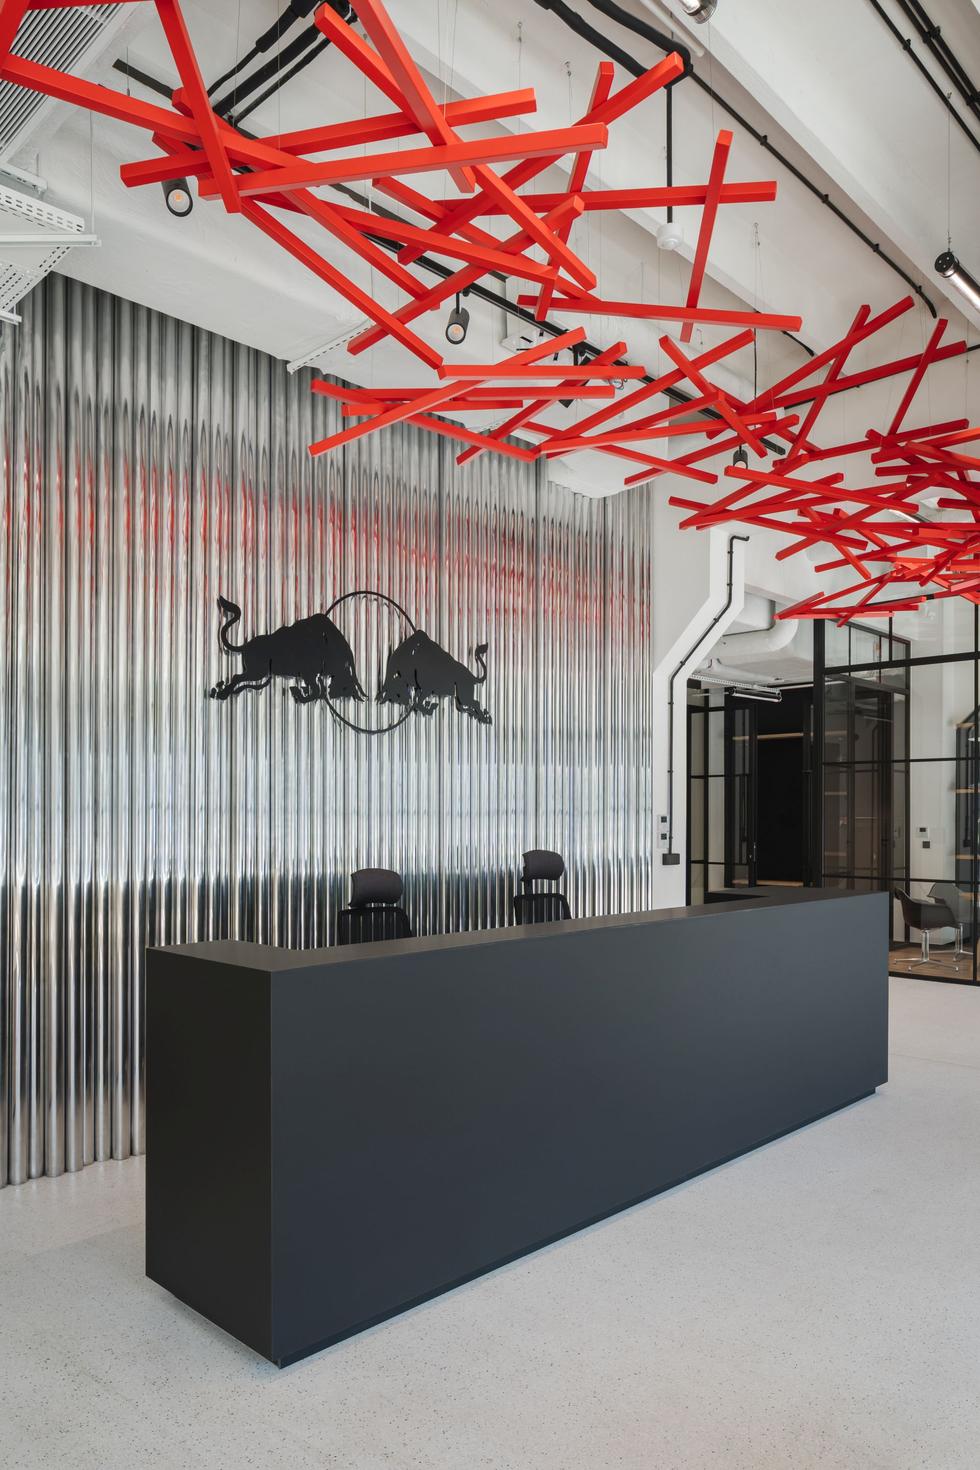 Siedziba firmy Red Bull w Warszawie: nowoczesna przestrzeń w starym forcie